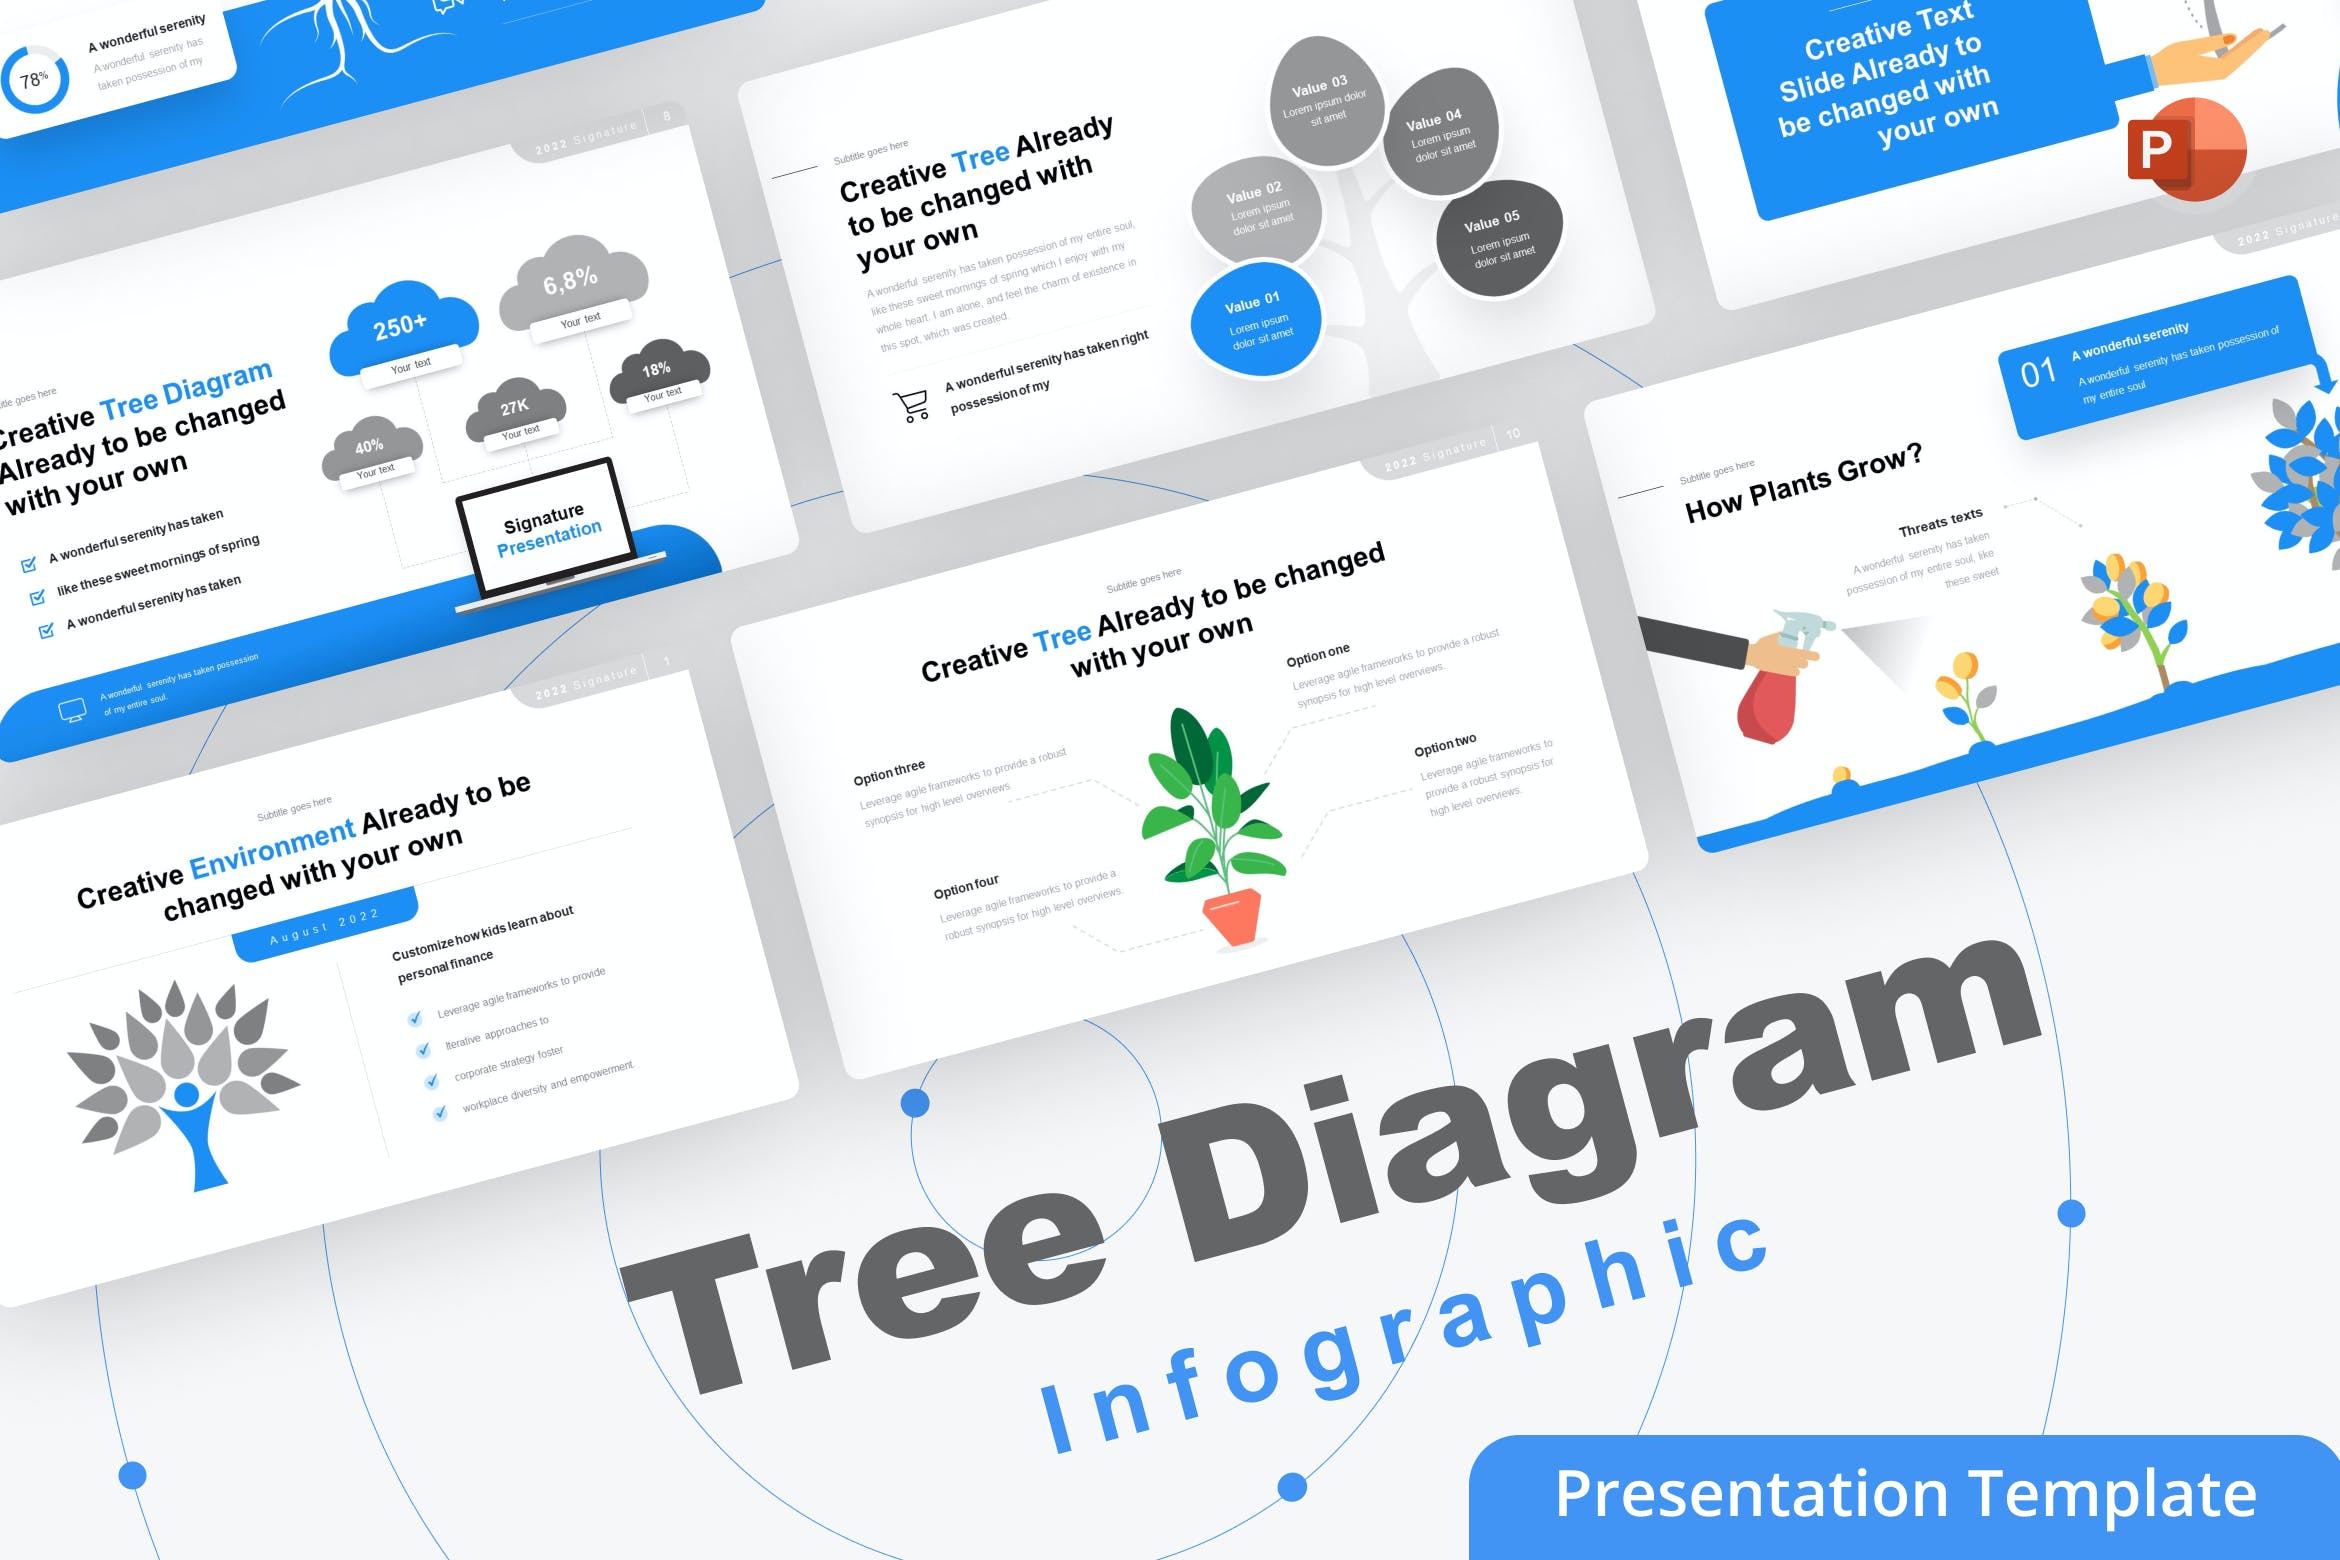 树形图PPT模板 Tree Diagram PowerPoint Template 幻灯图表 第1张